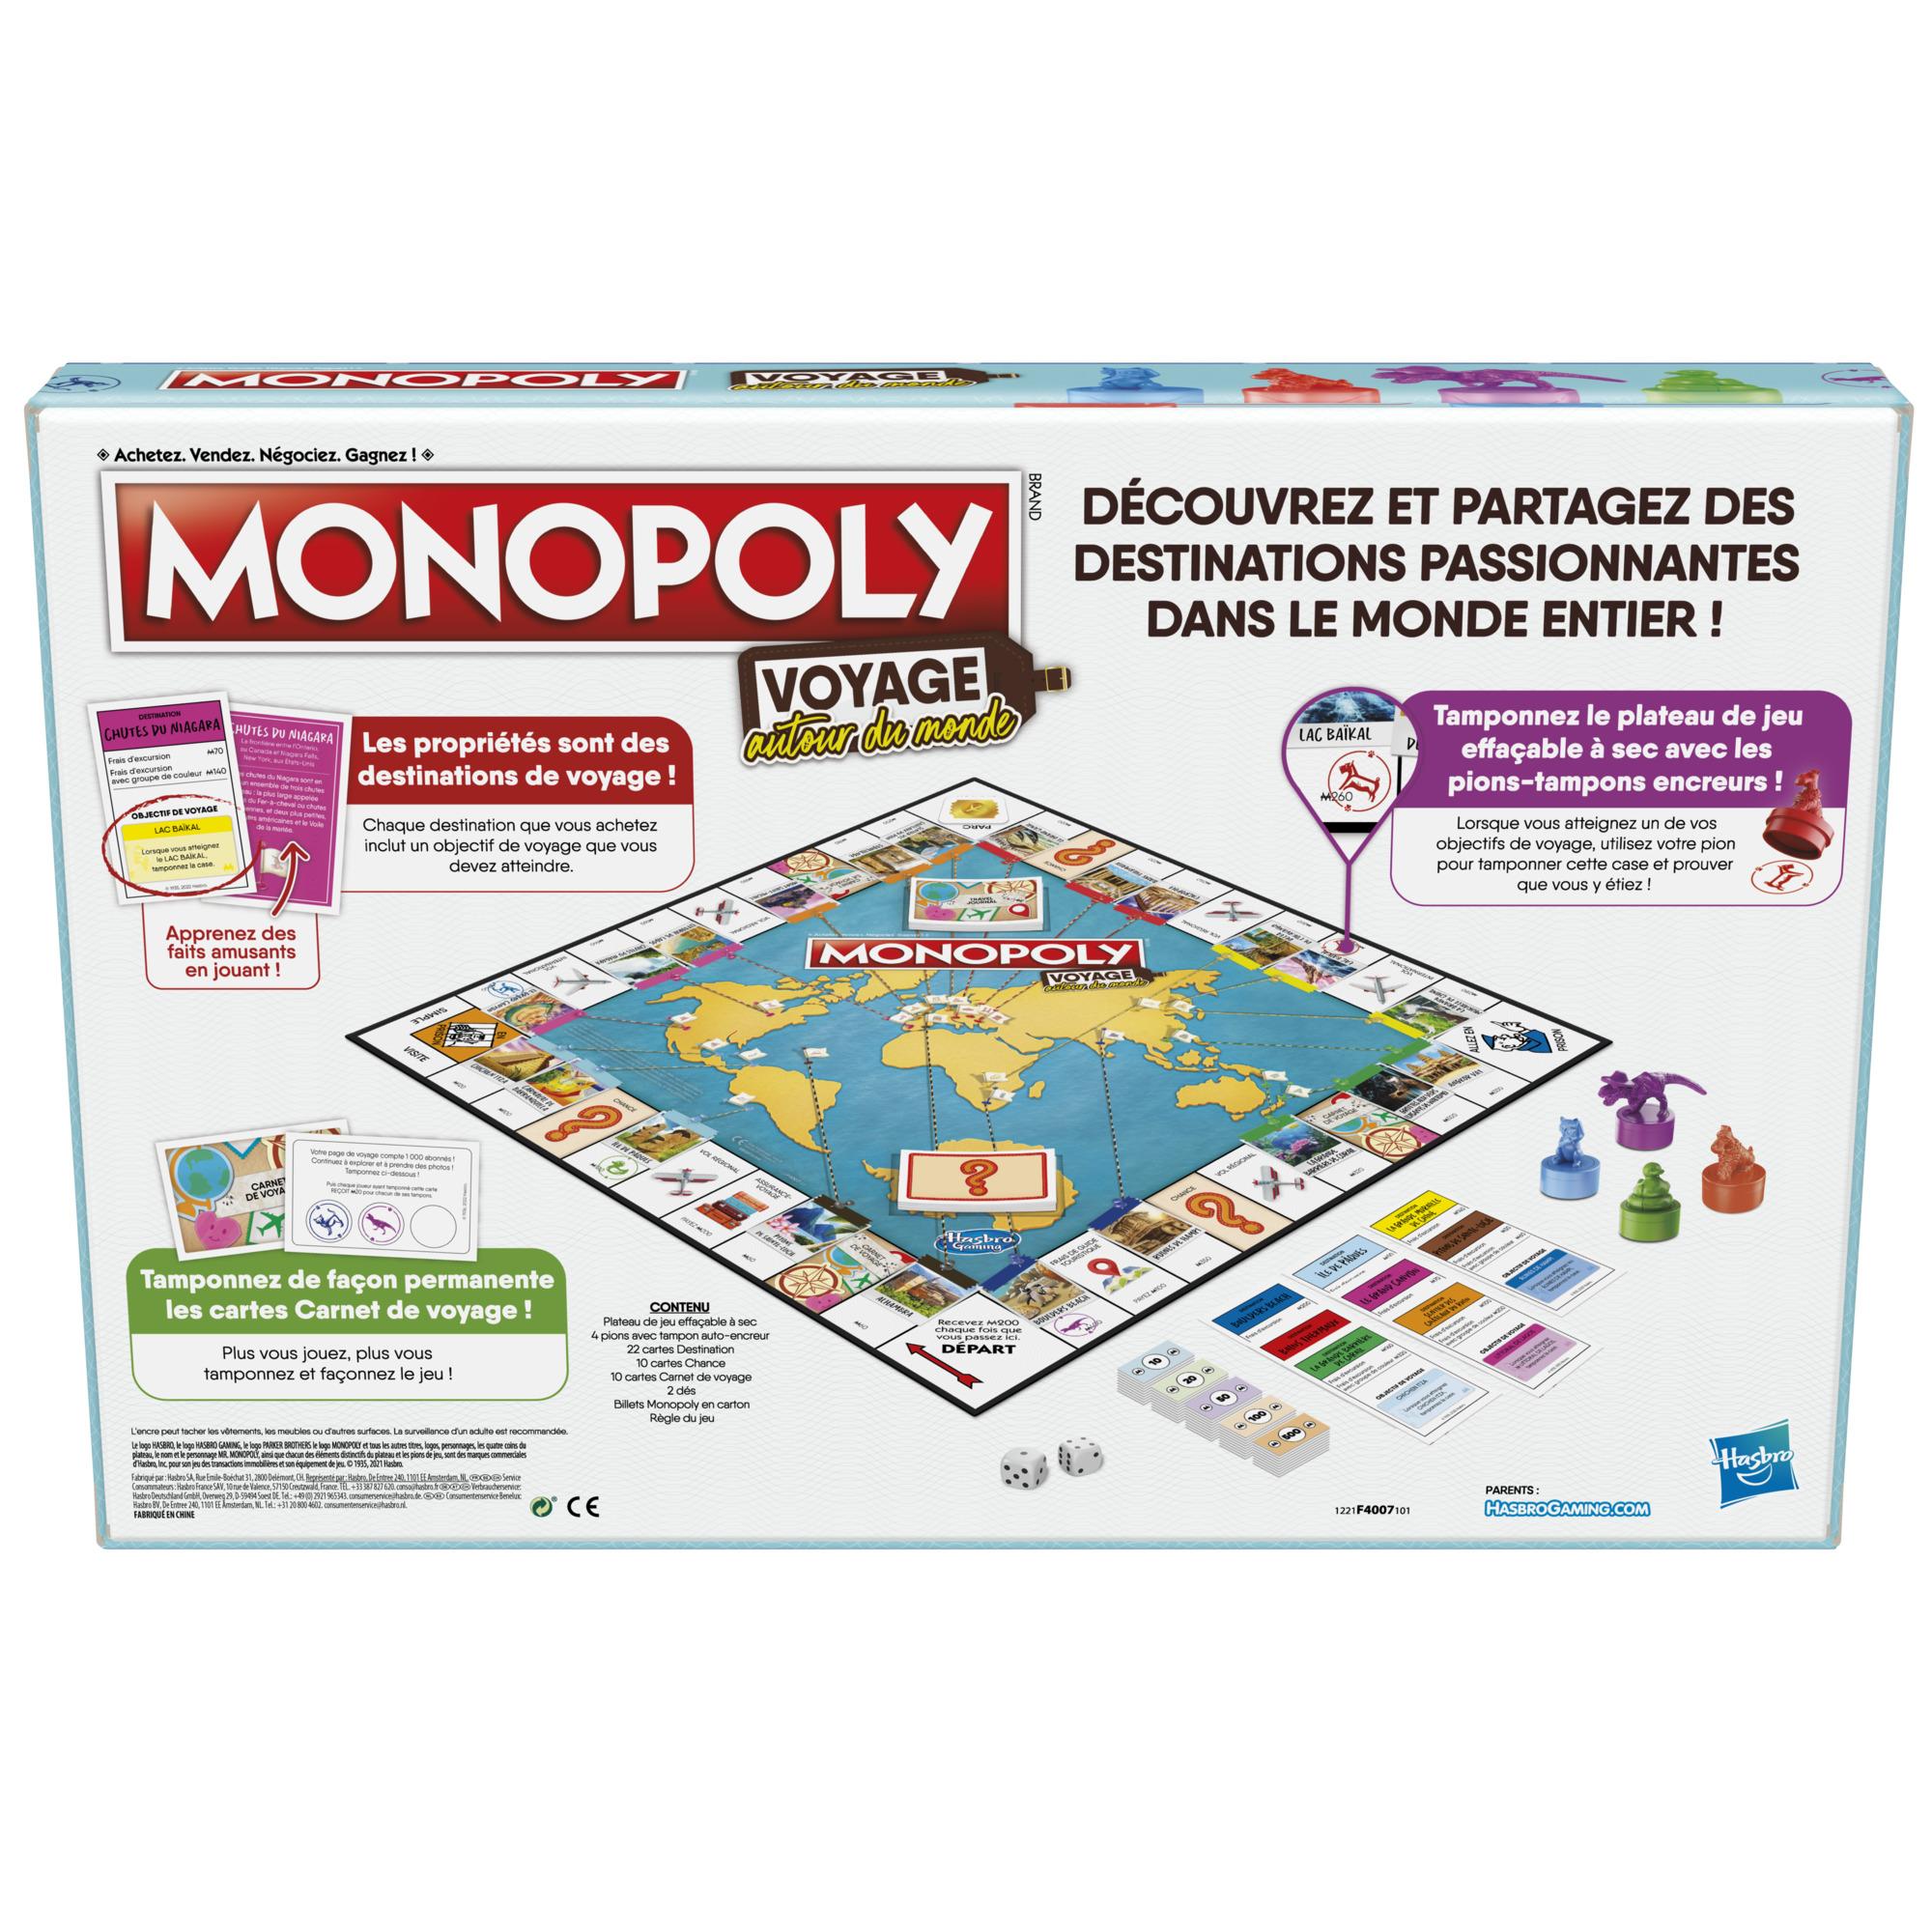 50 billets 200 frans MONOPOLY - jeux societe